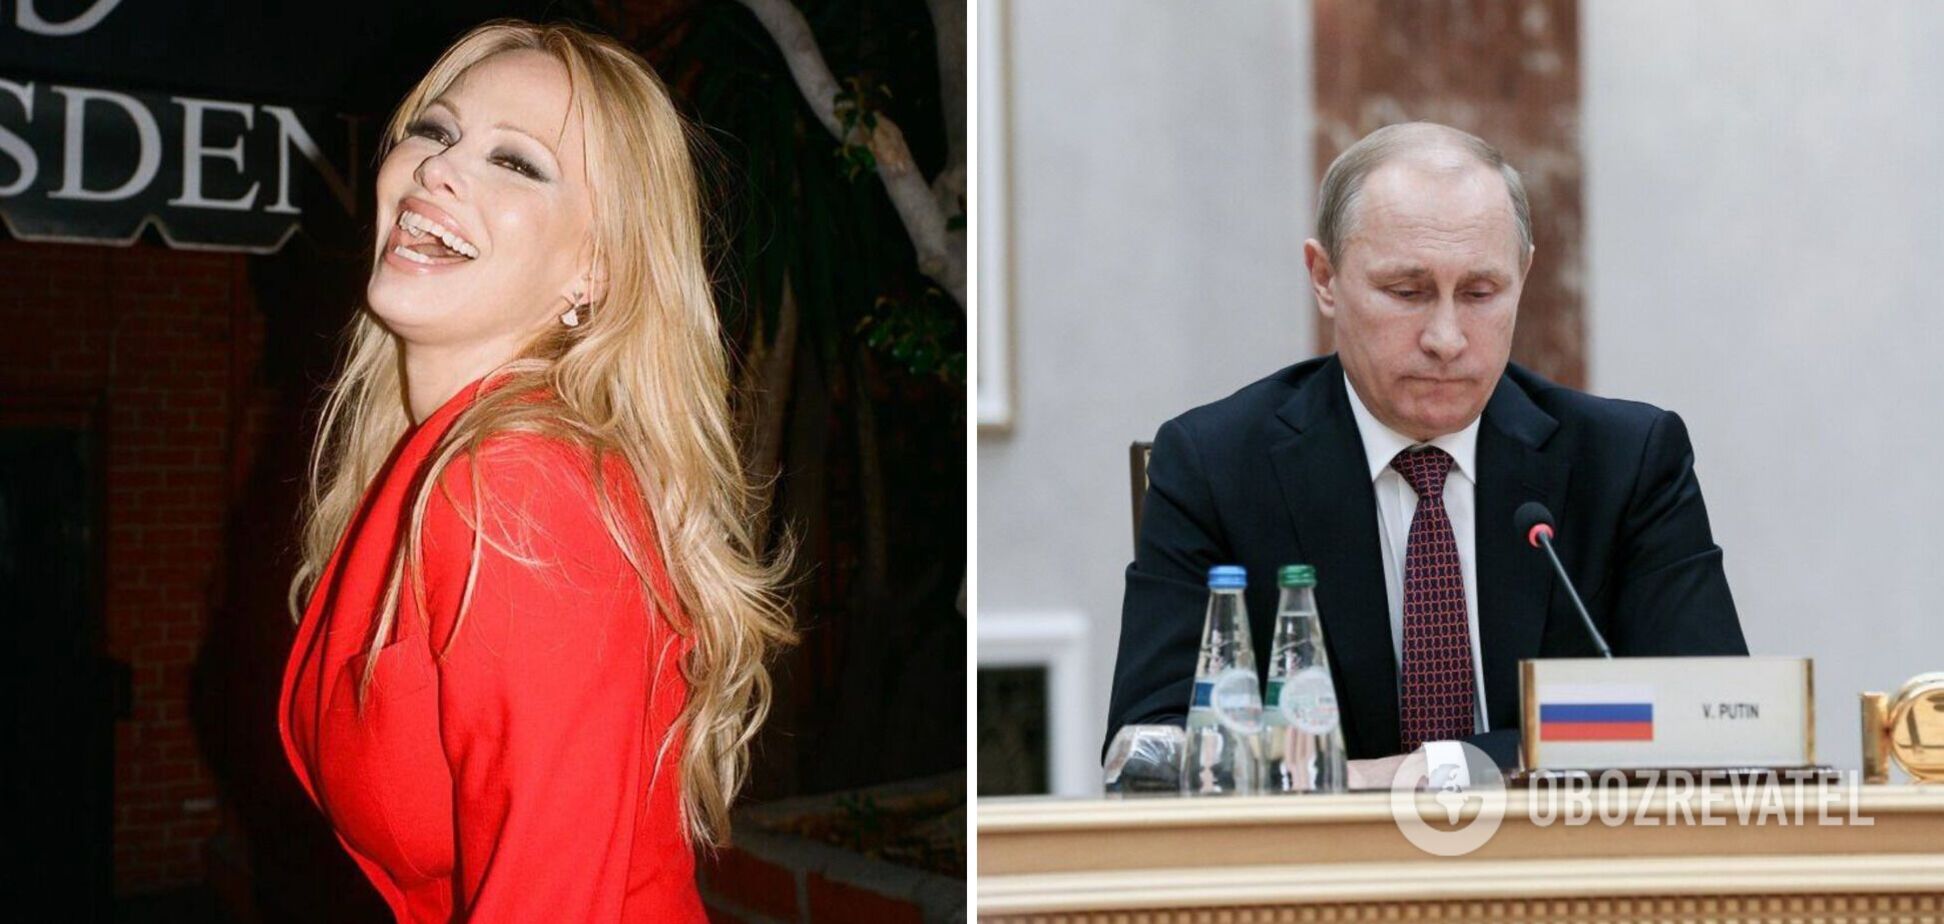 'Він був радий, що я прийшла': Памела Андерсон згадала про зустріч з Путіним у Кремлі